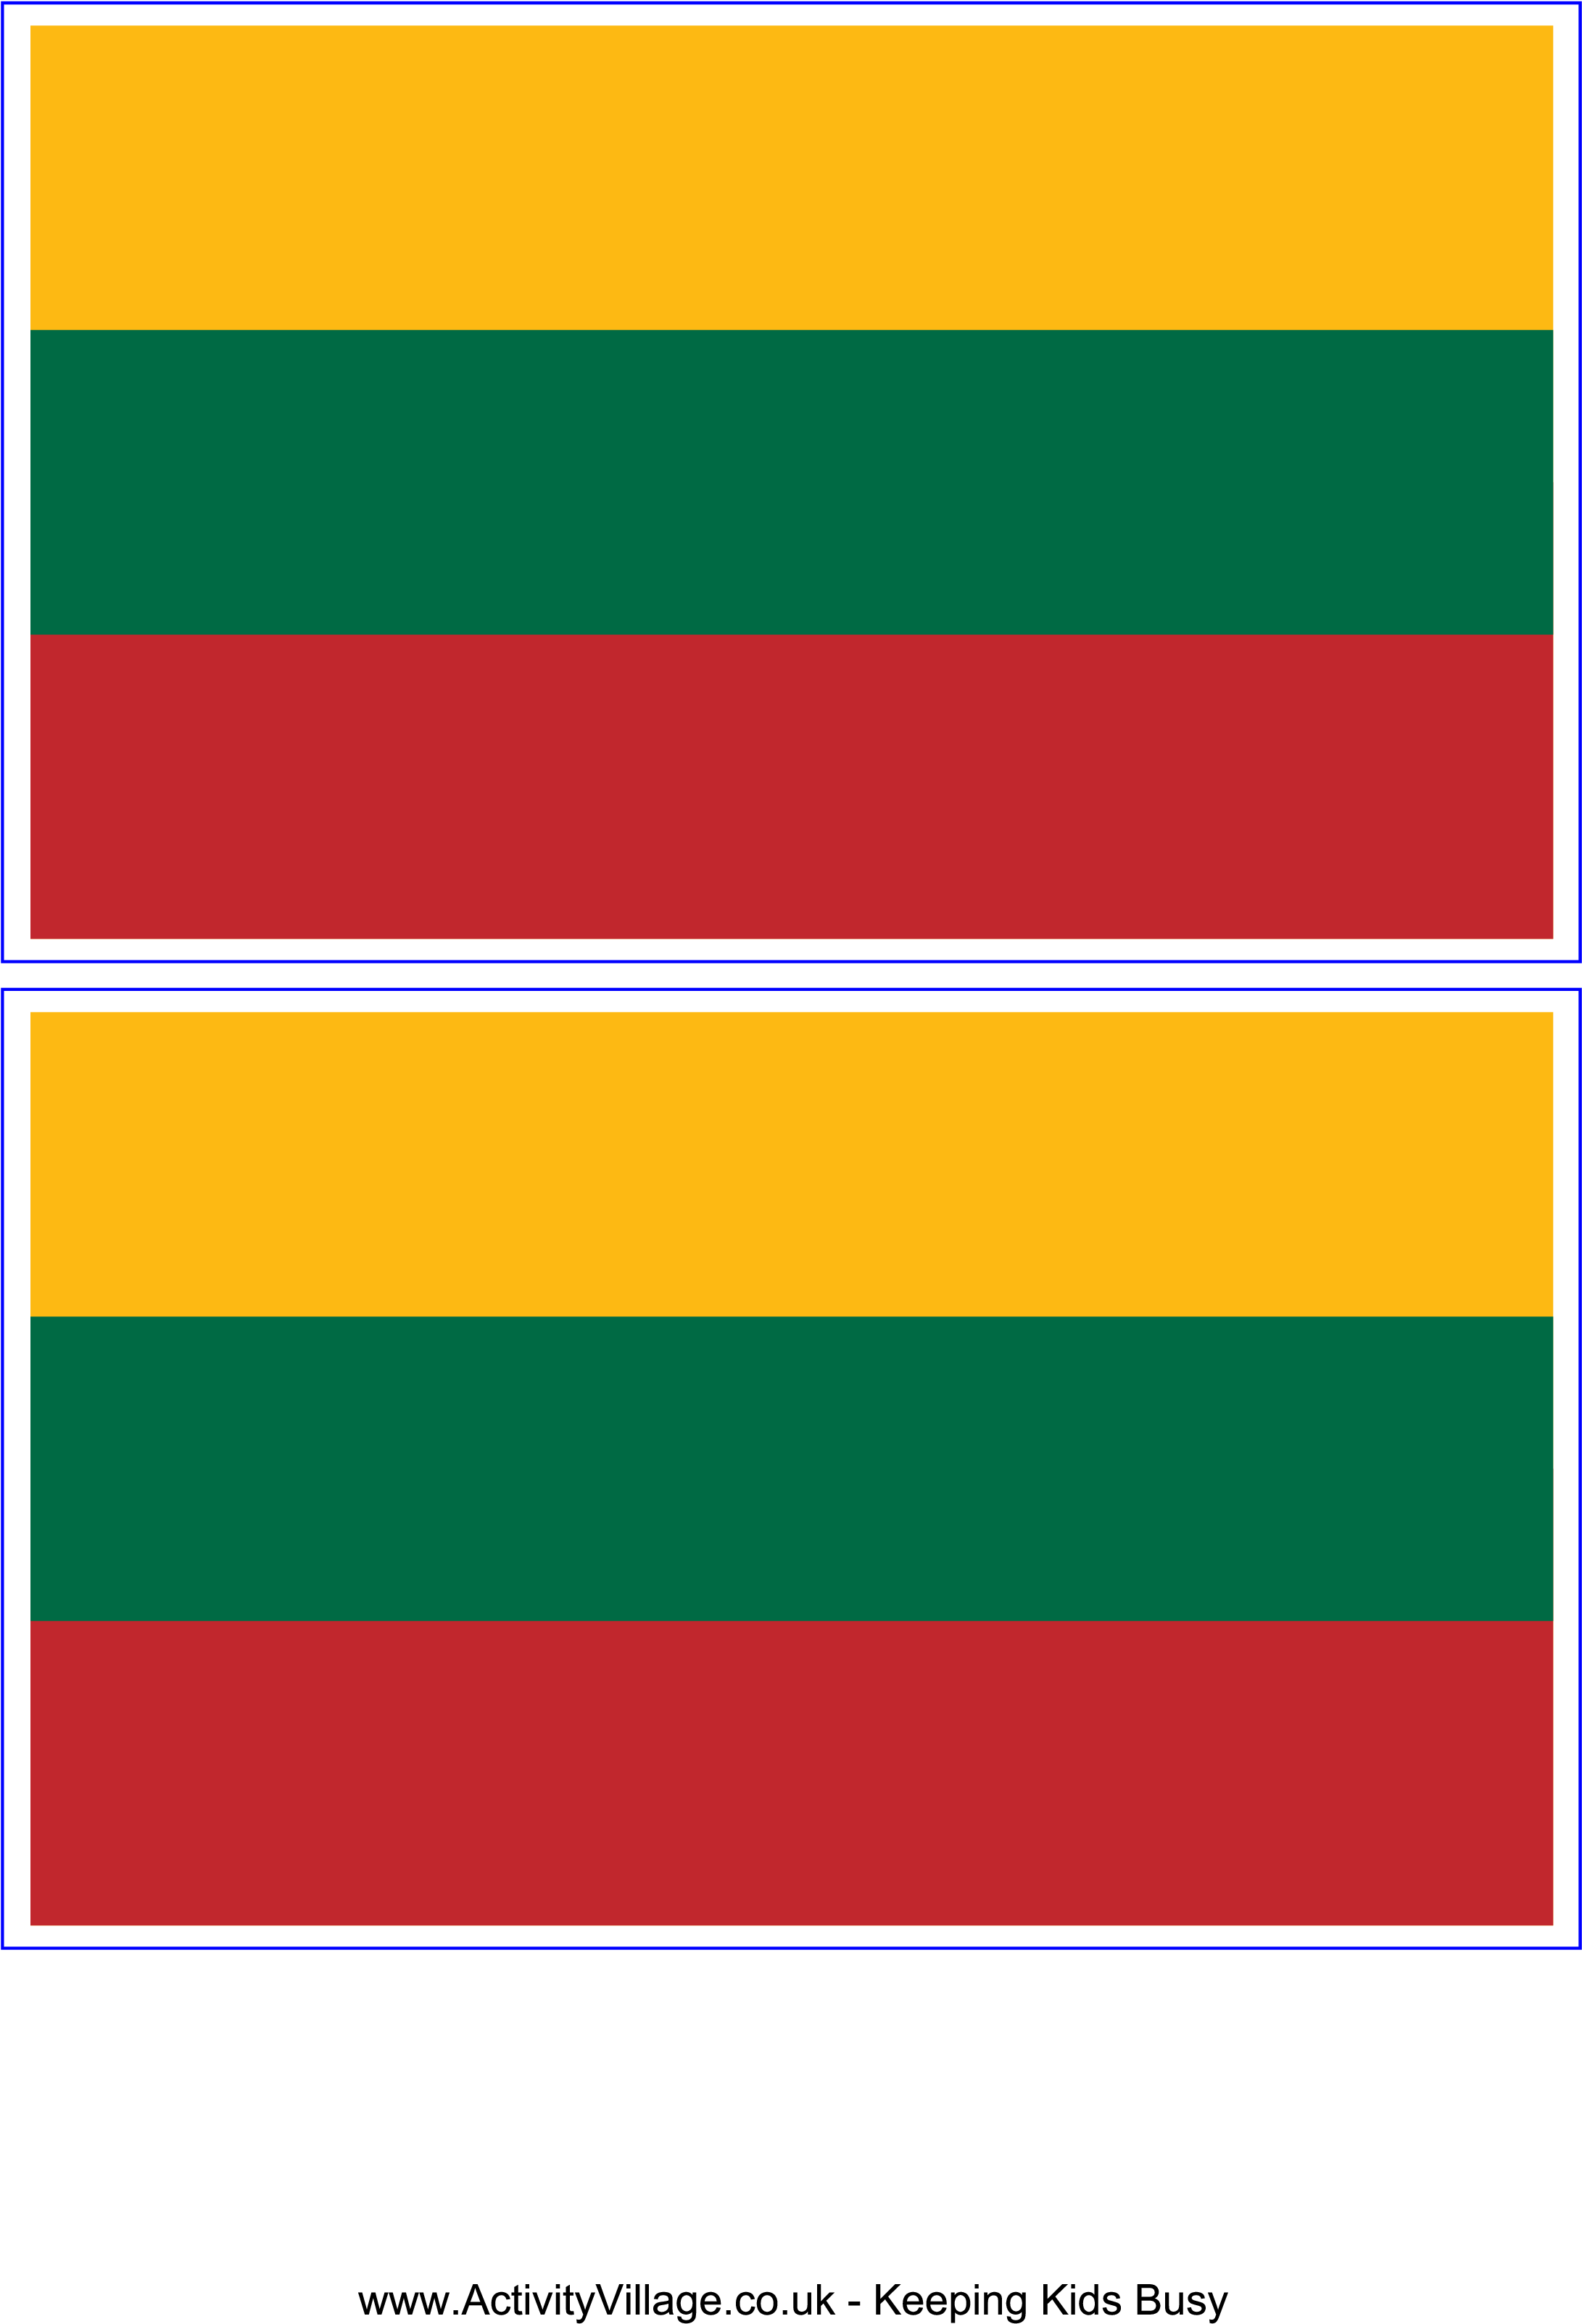 Lithuanian Flag Comparison